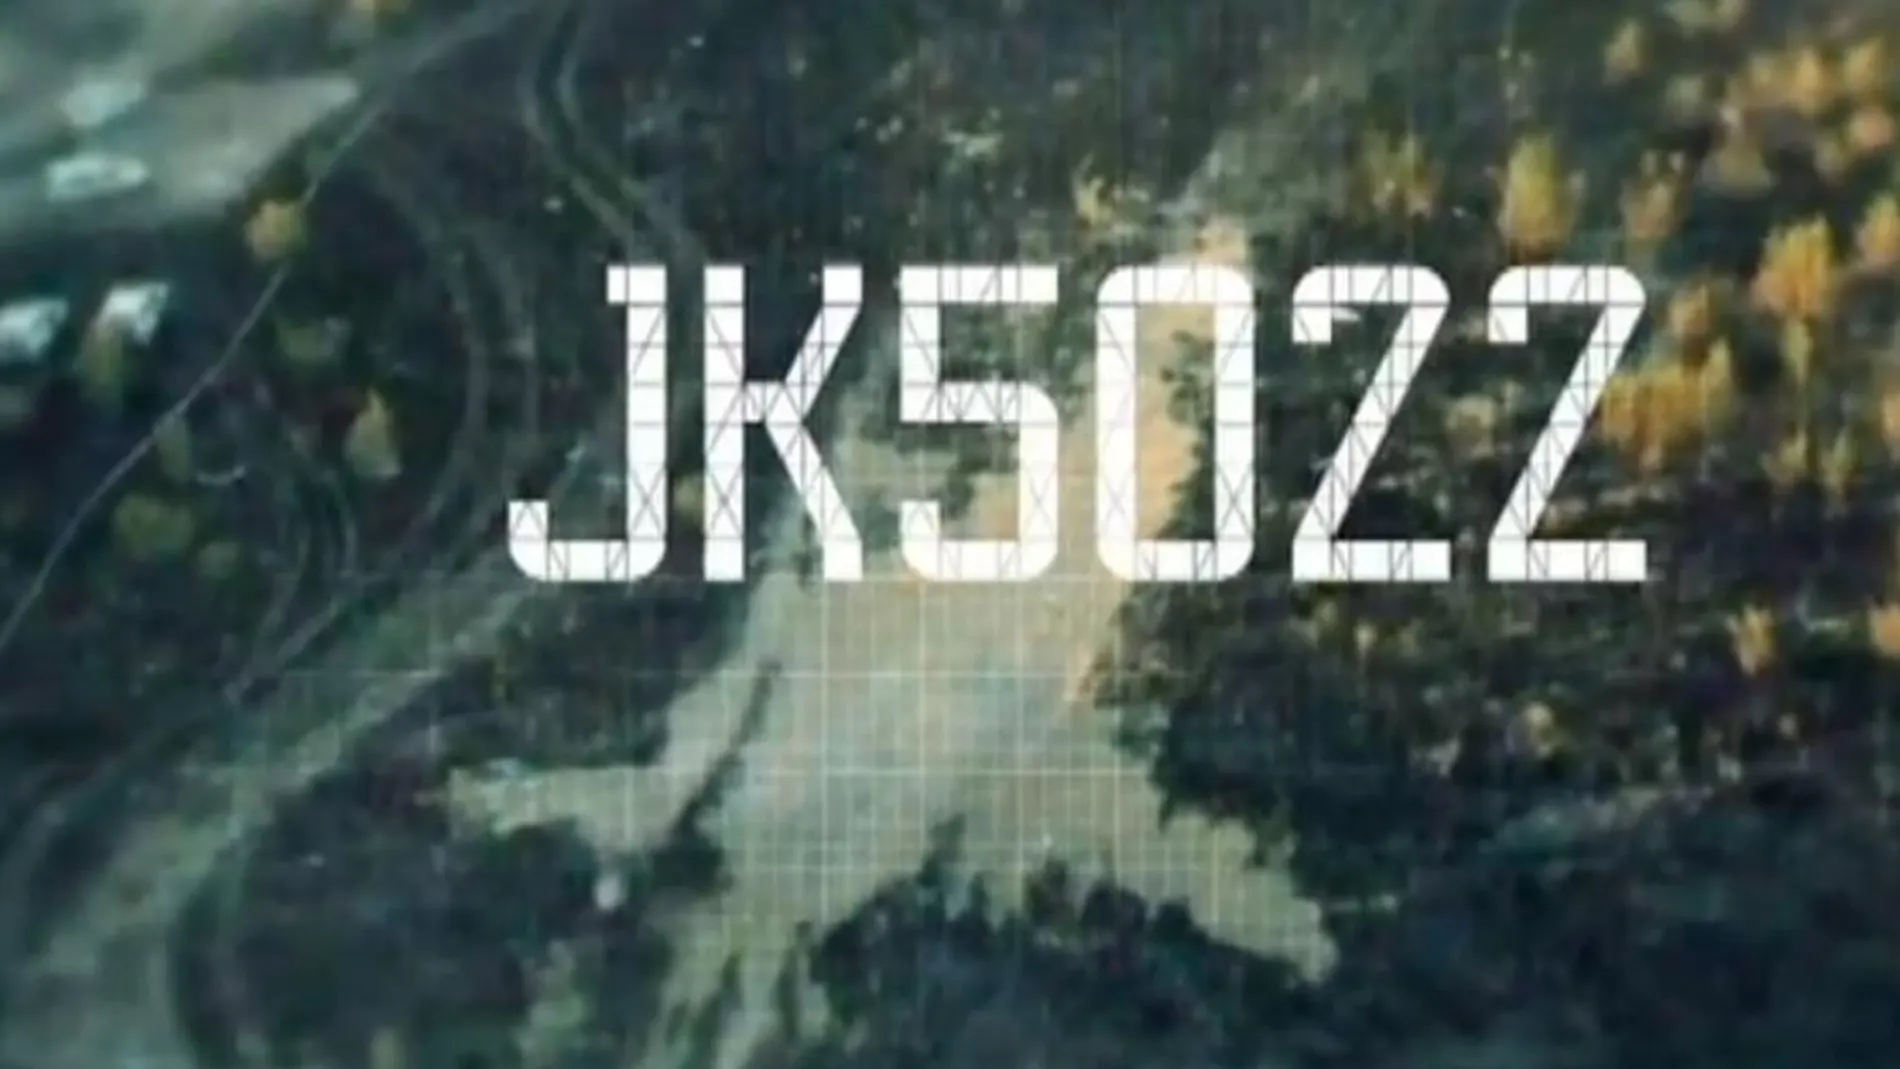 Imagen promocional del documental, en el que se puede ver la huella que dejó el avión al estrellarse contra el suelo